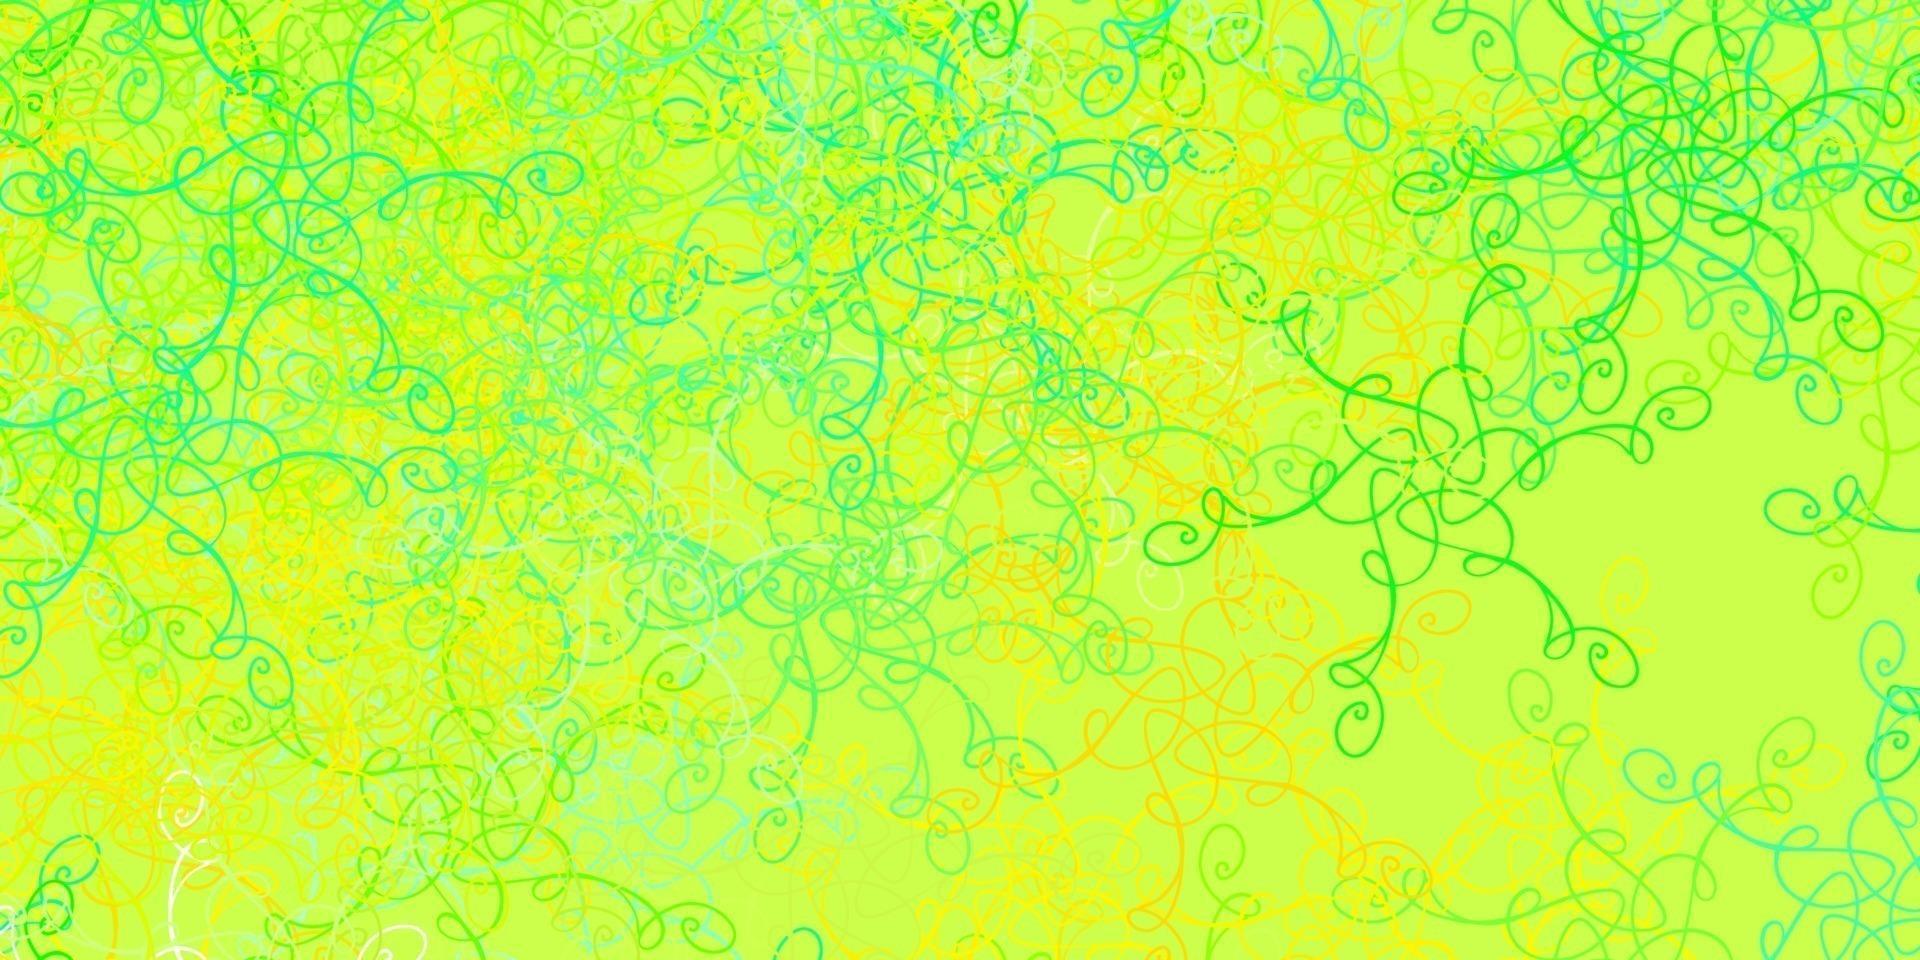 patrón de vector verde claro, amarillo con líneas torcidas.